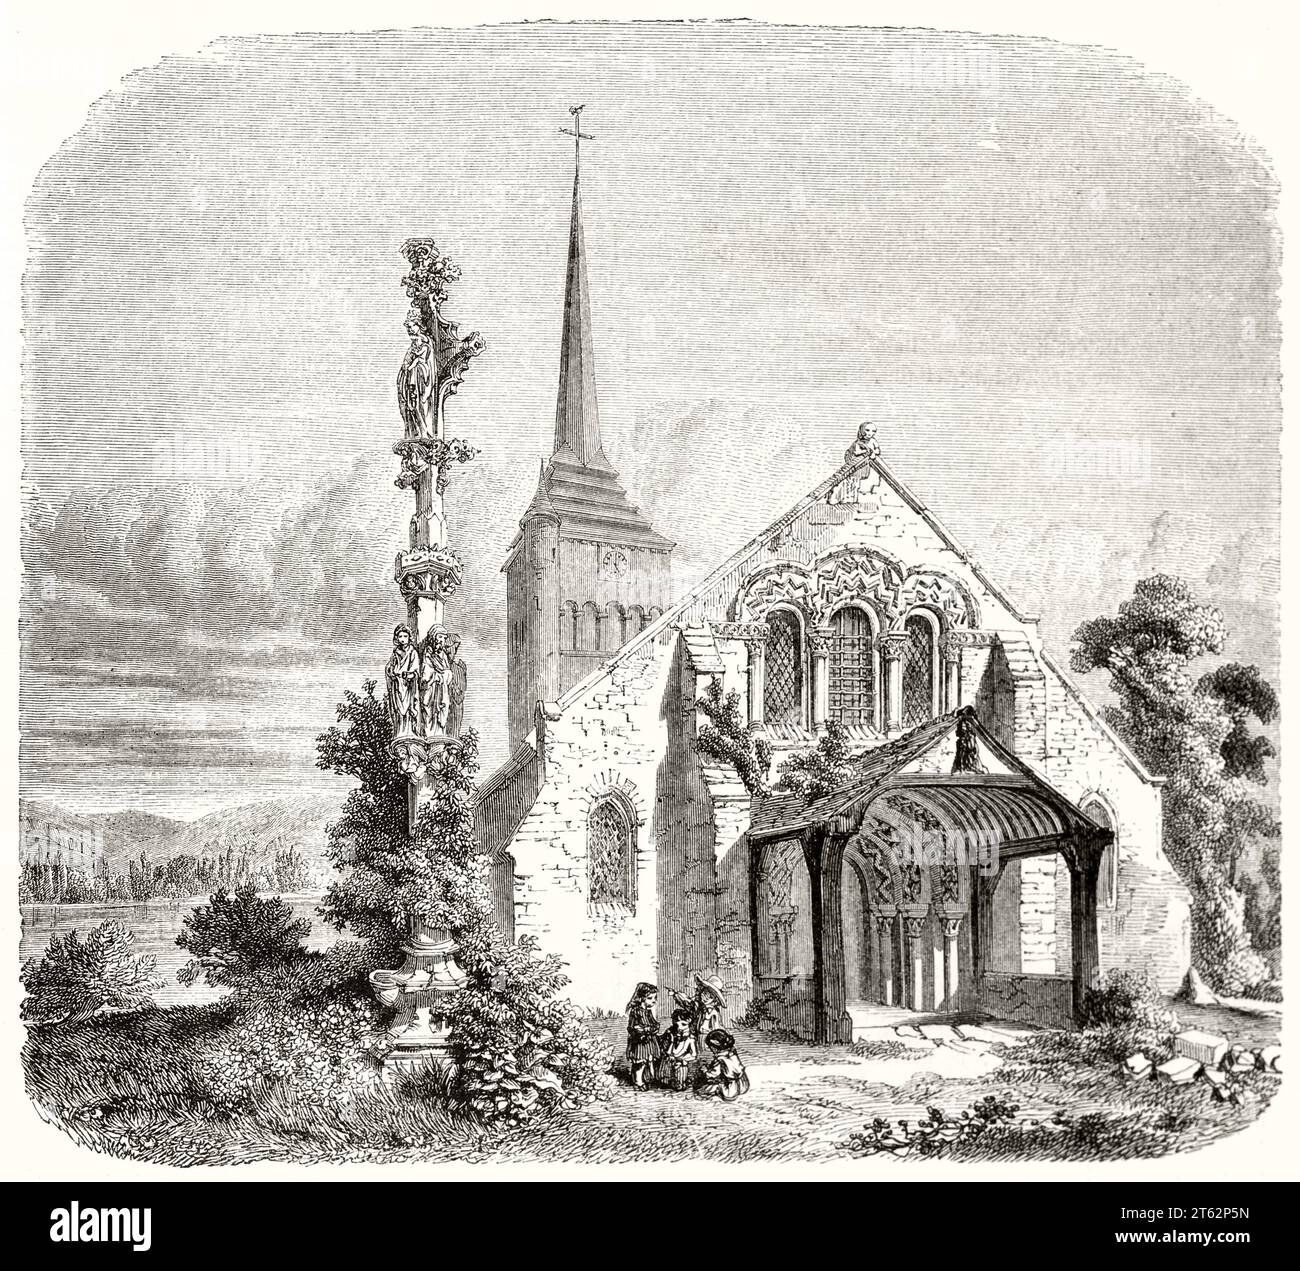 Vue ancienne de l'église Saint-Ouen, Lery, France. Par Lancelot et Quaterly, publ. Sur magasin pittoresque, Paris, 1849 Banque D'Images